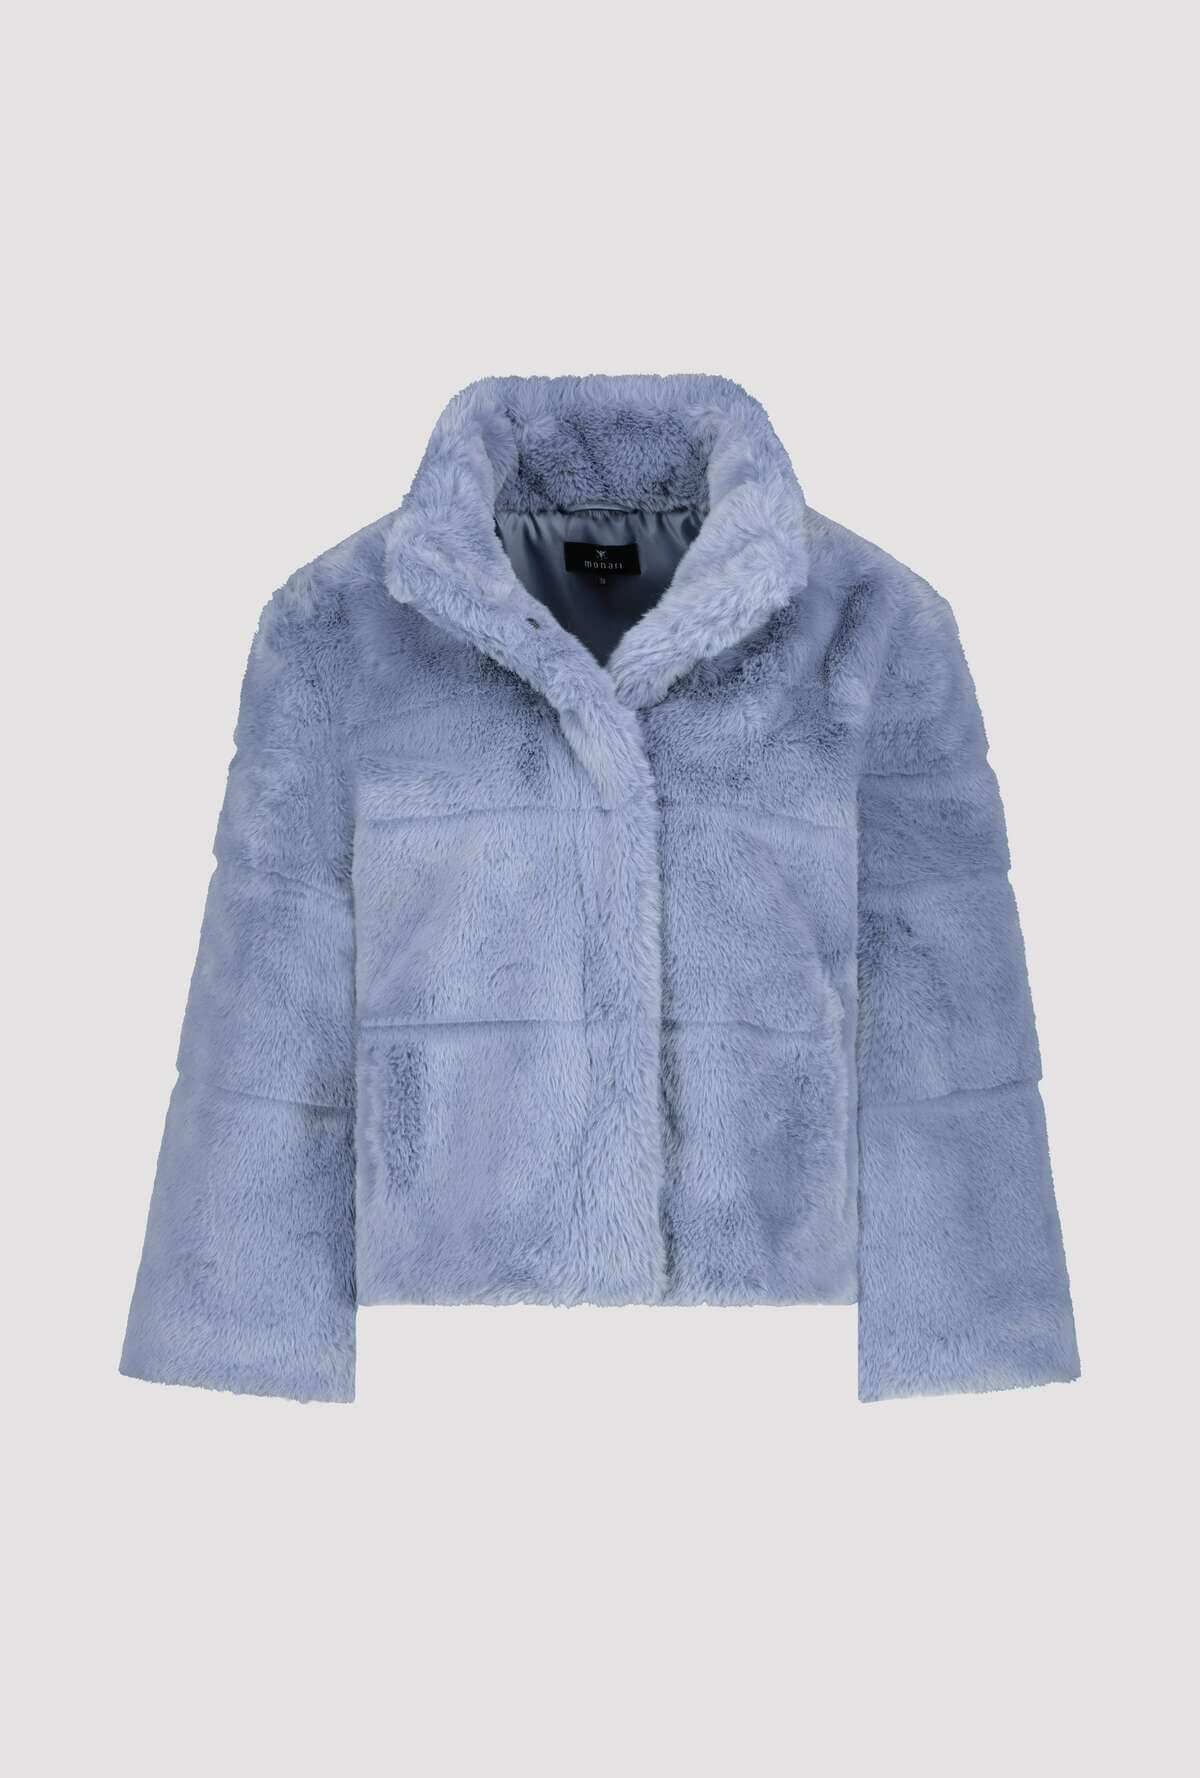 Fake Fur Smokey Blue Jacket